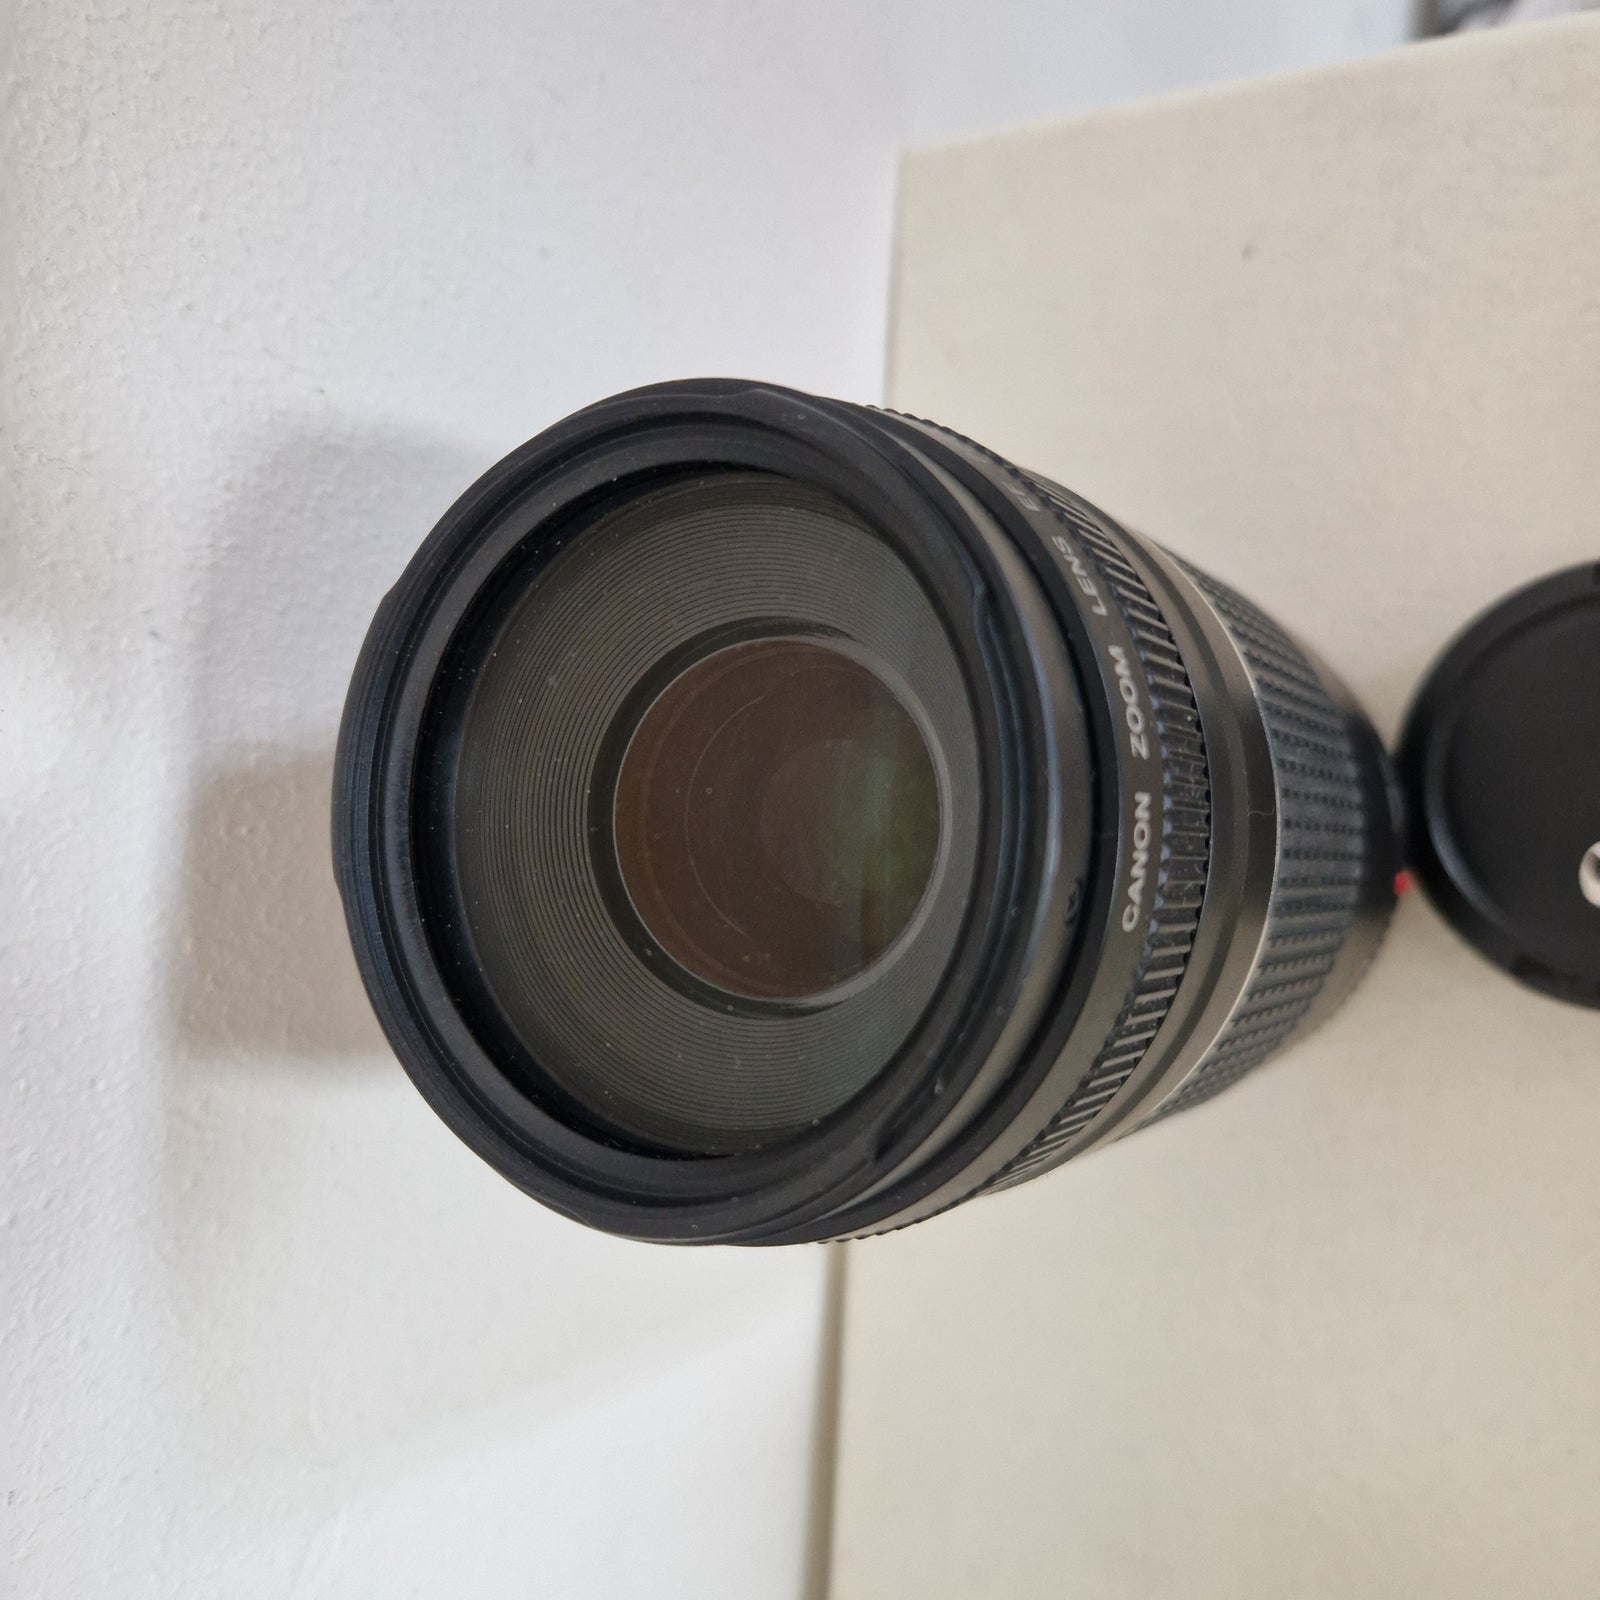 Zoomobjektiv, Canon, EF 75-300 1:4.5-5.6 III